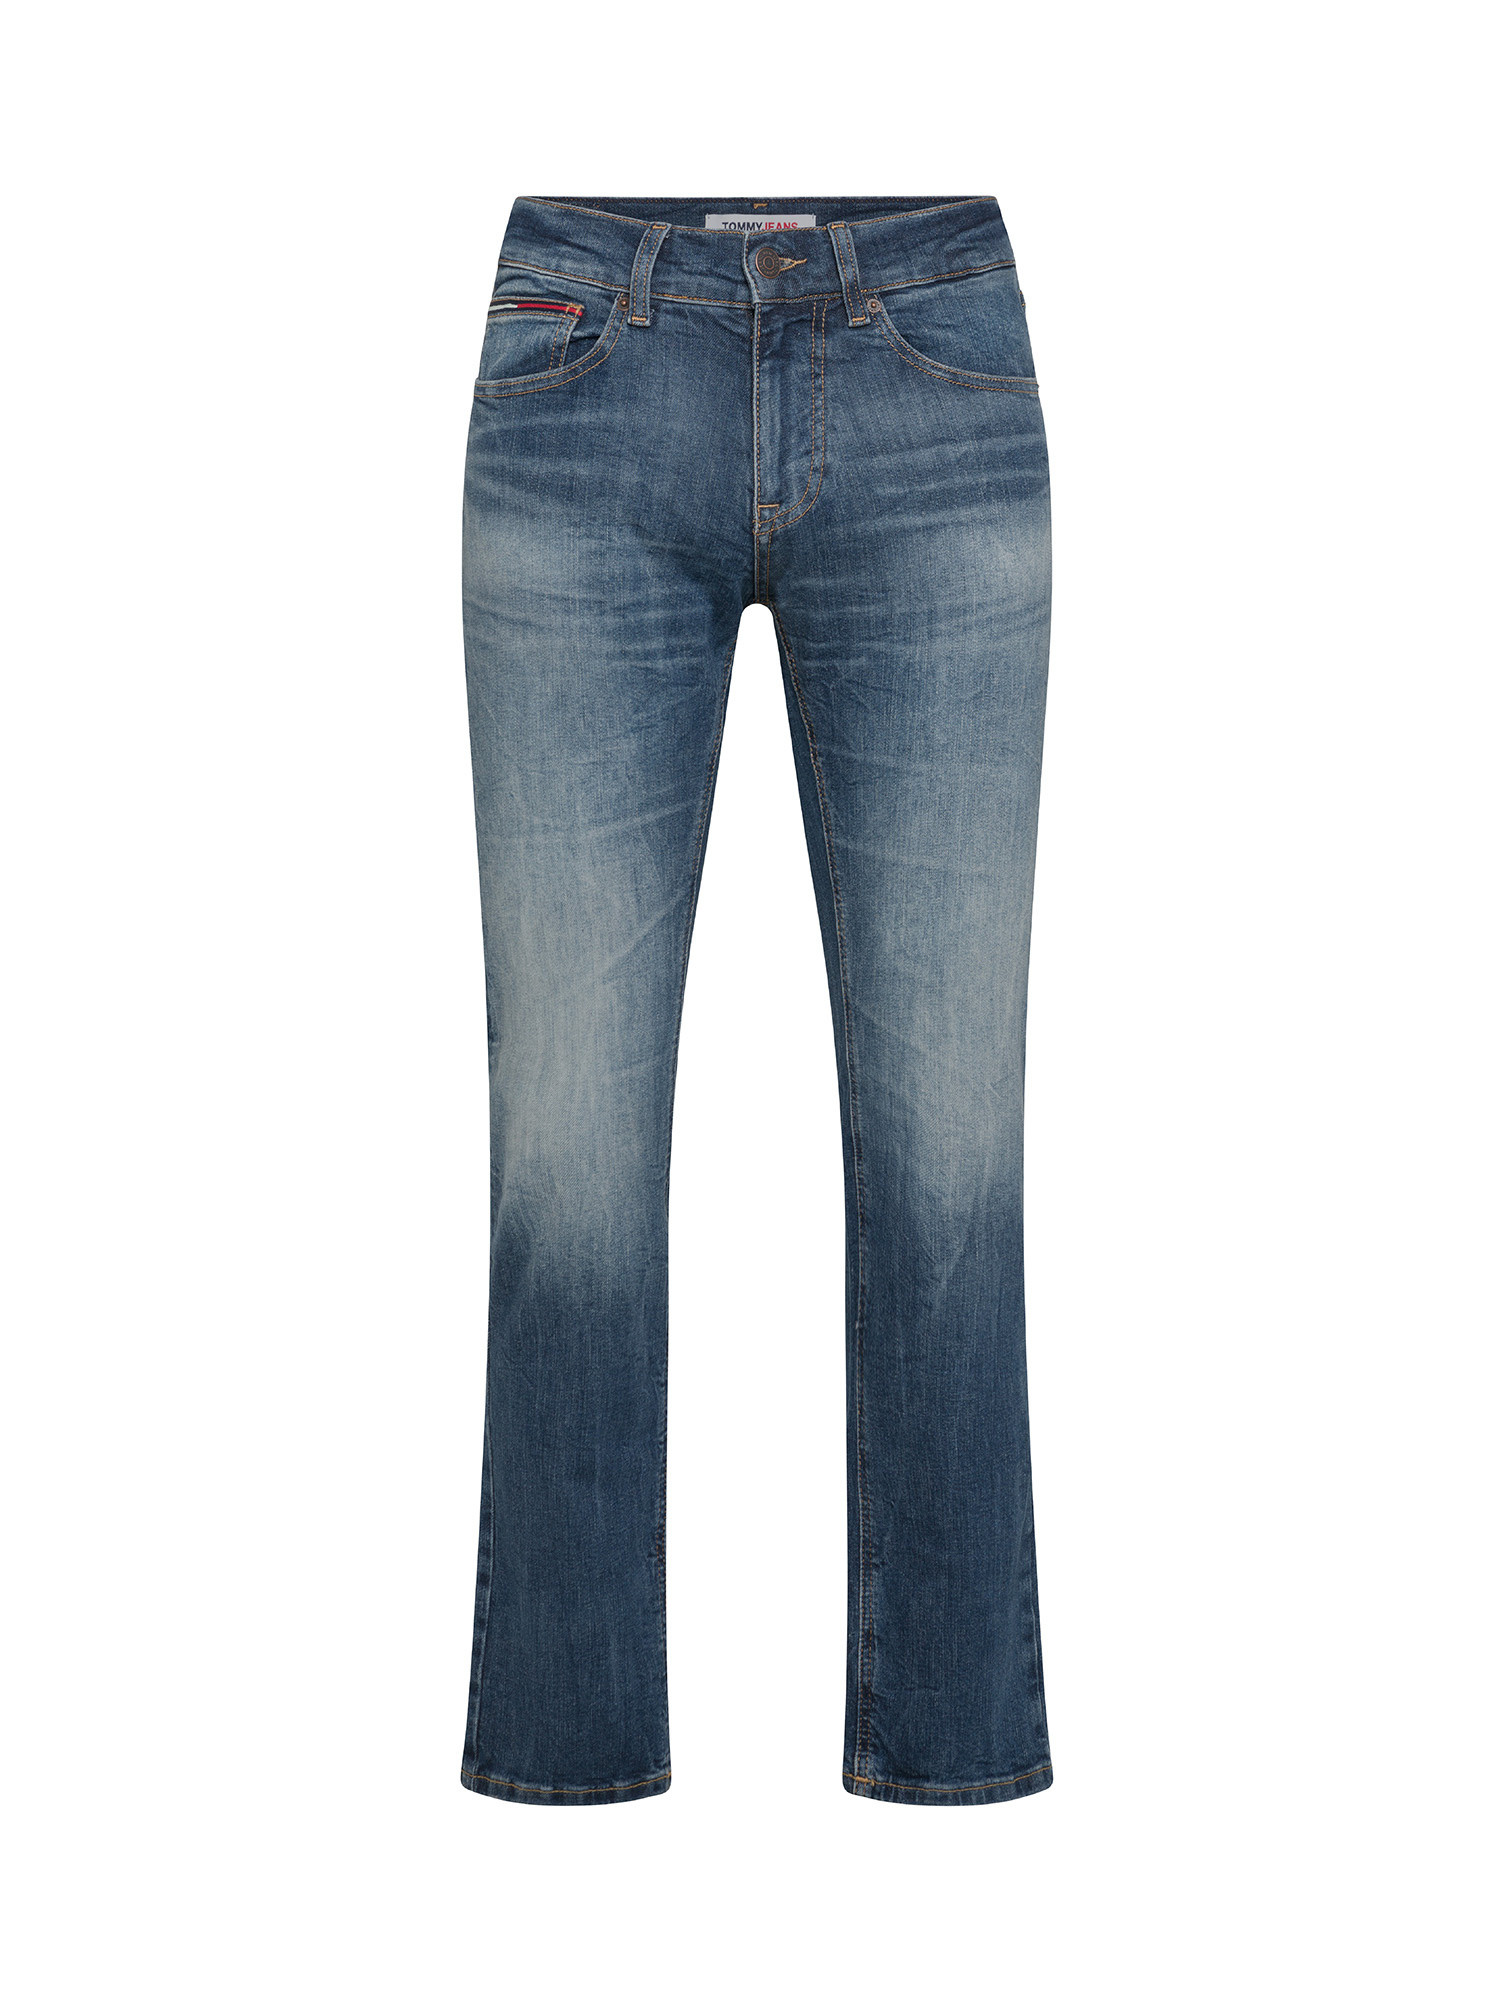 Tommy Jeans - Jeans cinque tasche slim fit, Denim, large image number 0